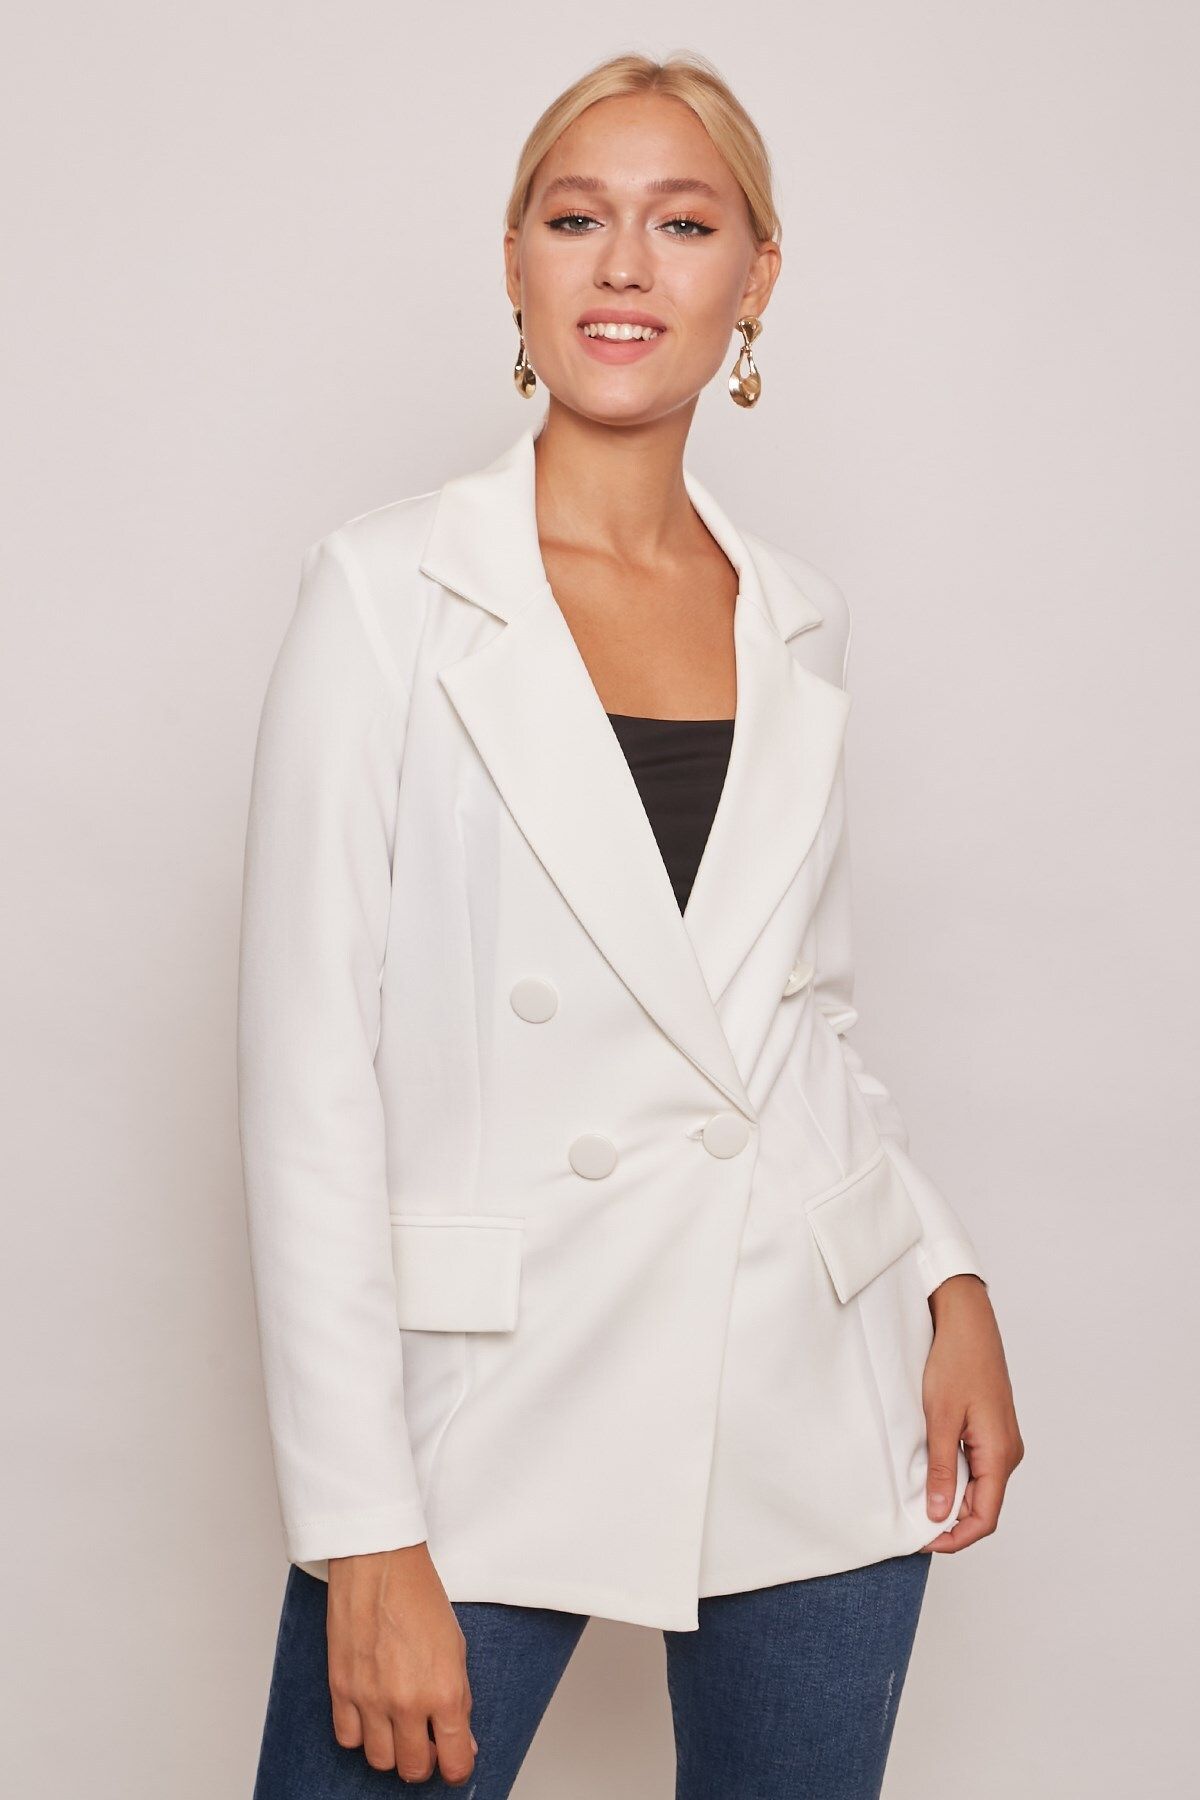 Jument Kadın Düğme Detaylı Uzun Kol Şık Ofis Süs Cep Kapaklı Kumaş Blazer Ceket-krem